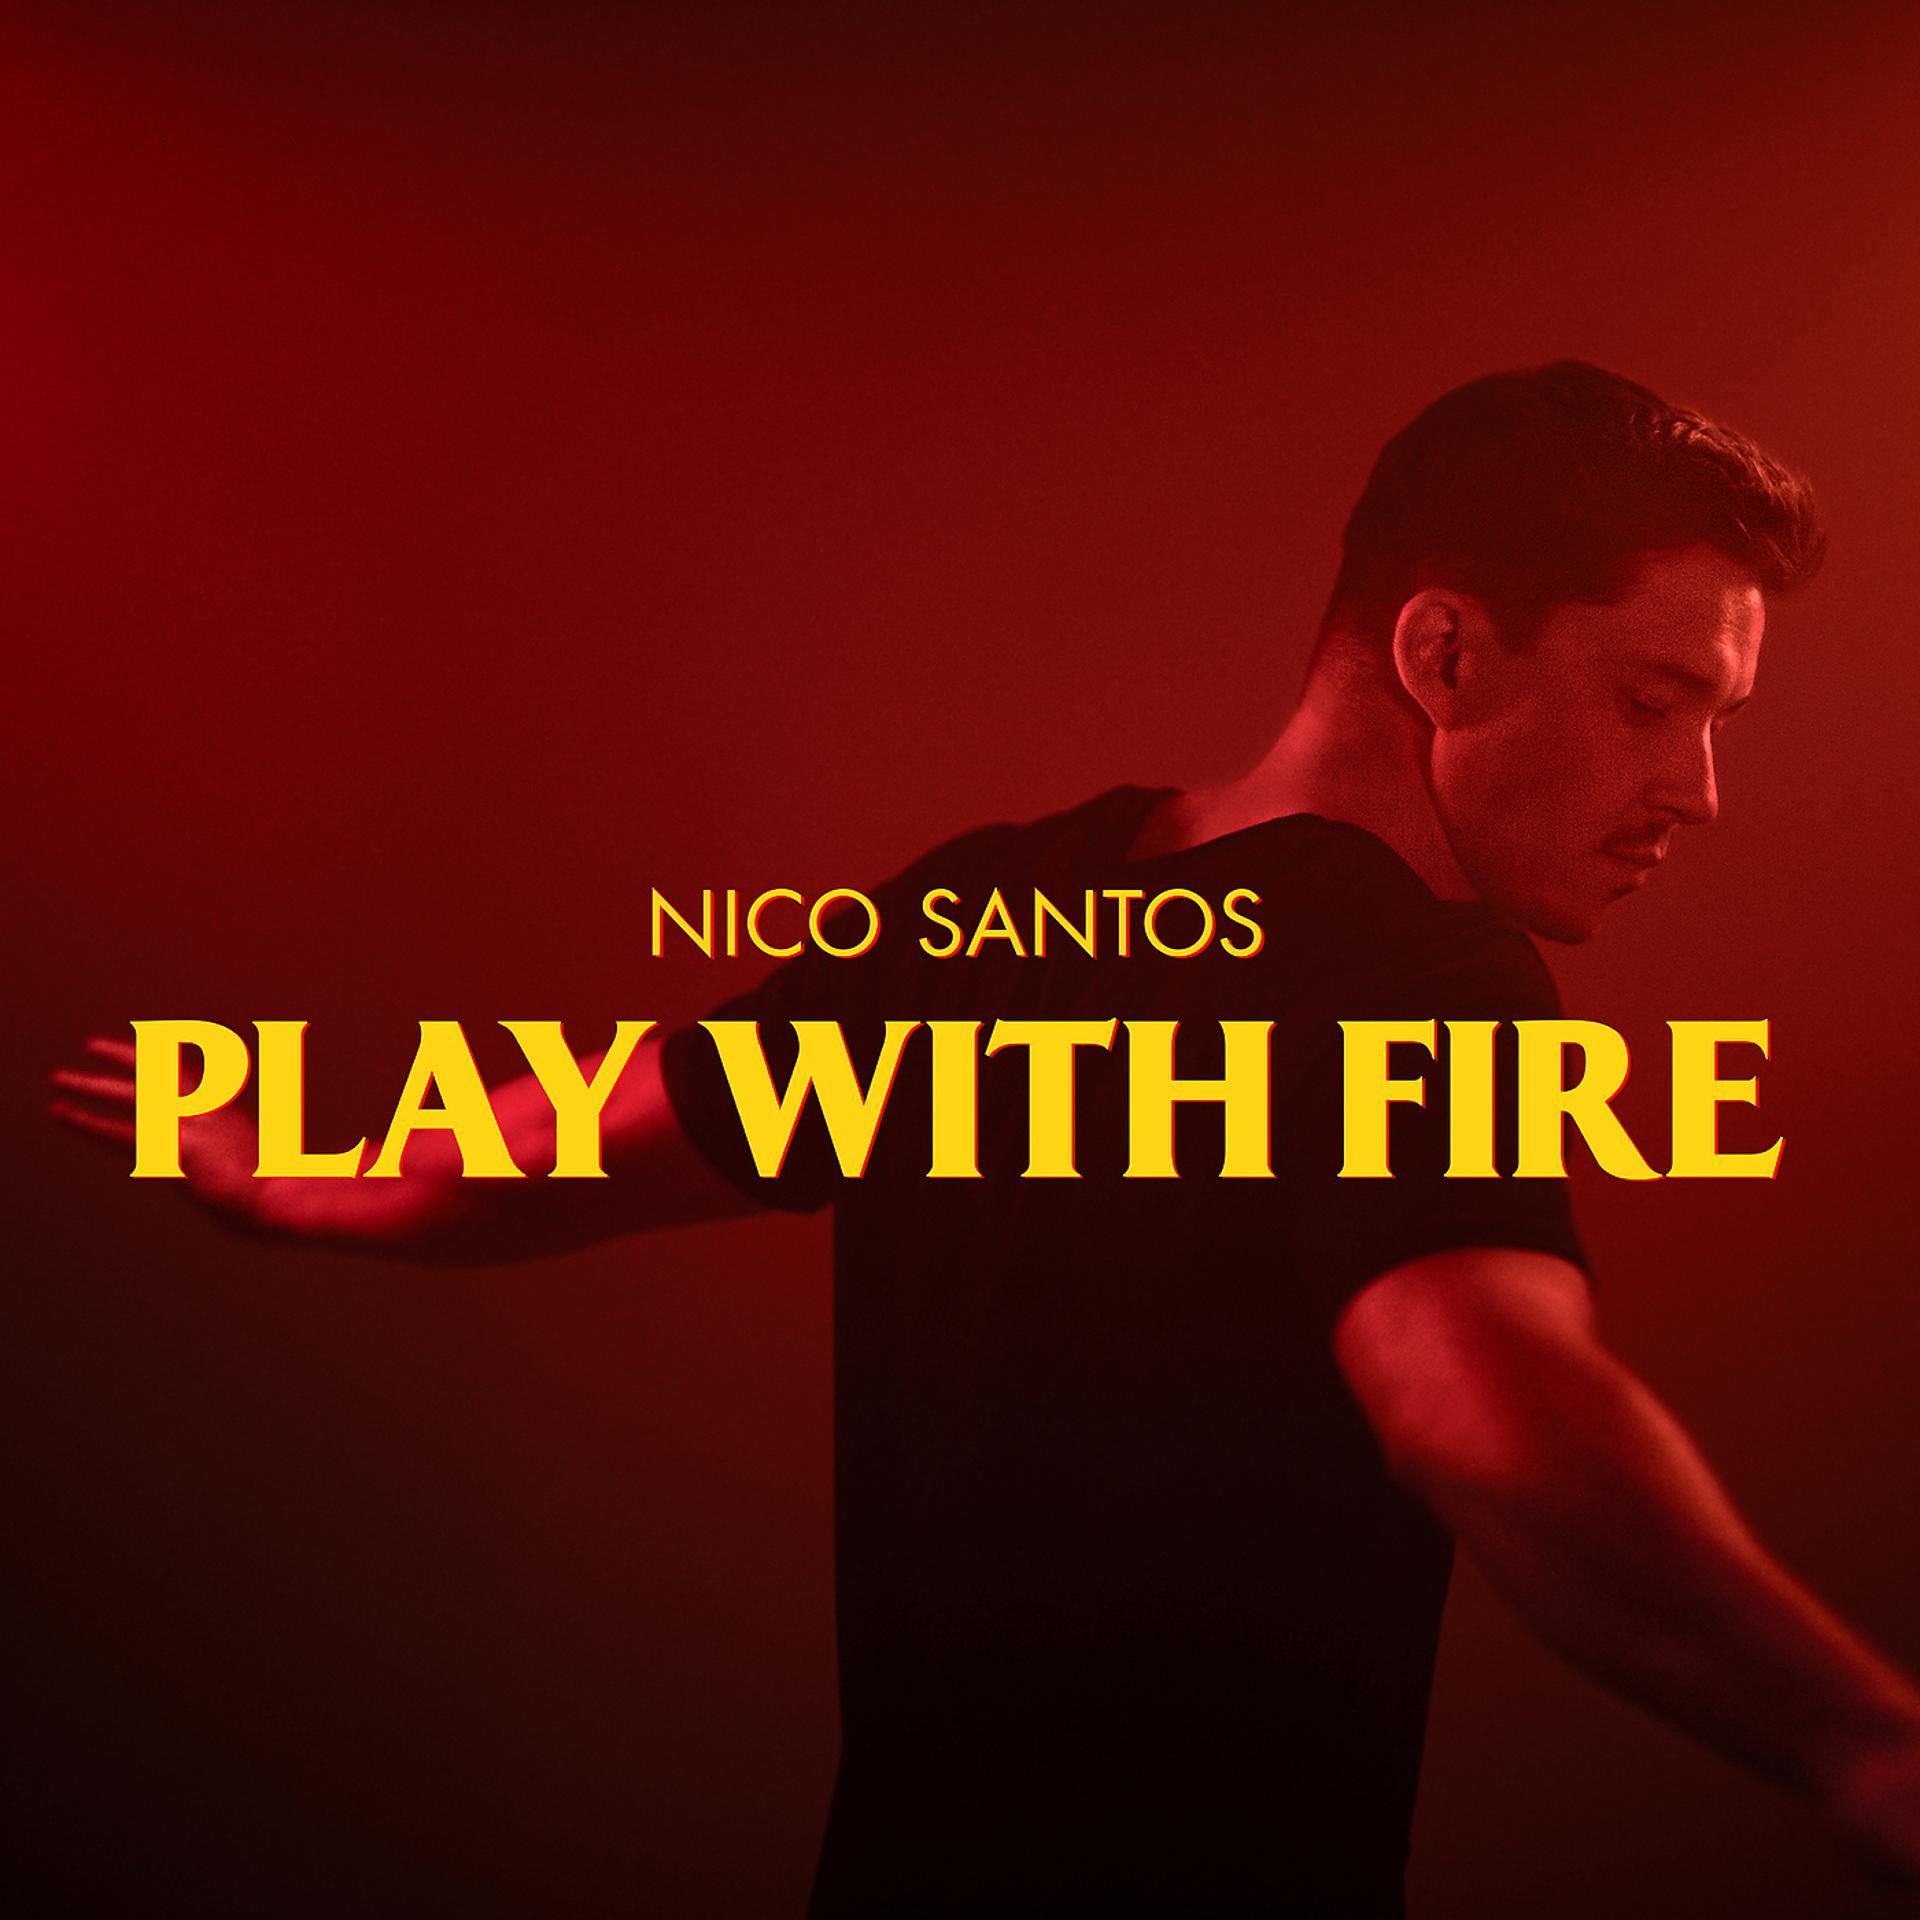 Nico Santos Play with Fire. Play with Fire Sam Tinnesz. Play with Fire Sam Tinnesz feat Yacht money. Nico Santos обложка.